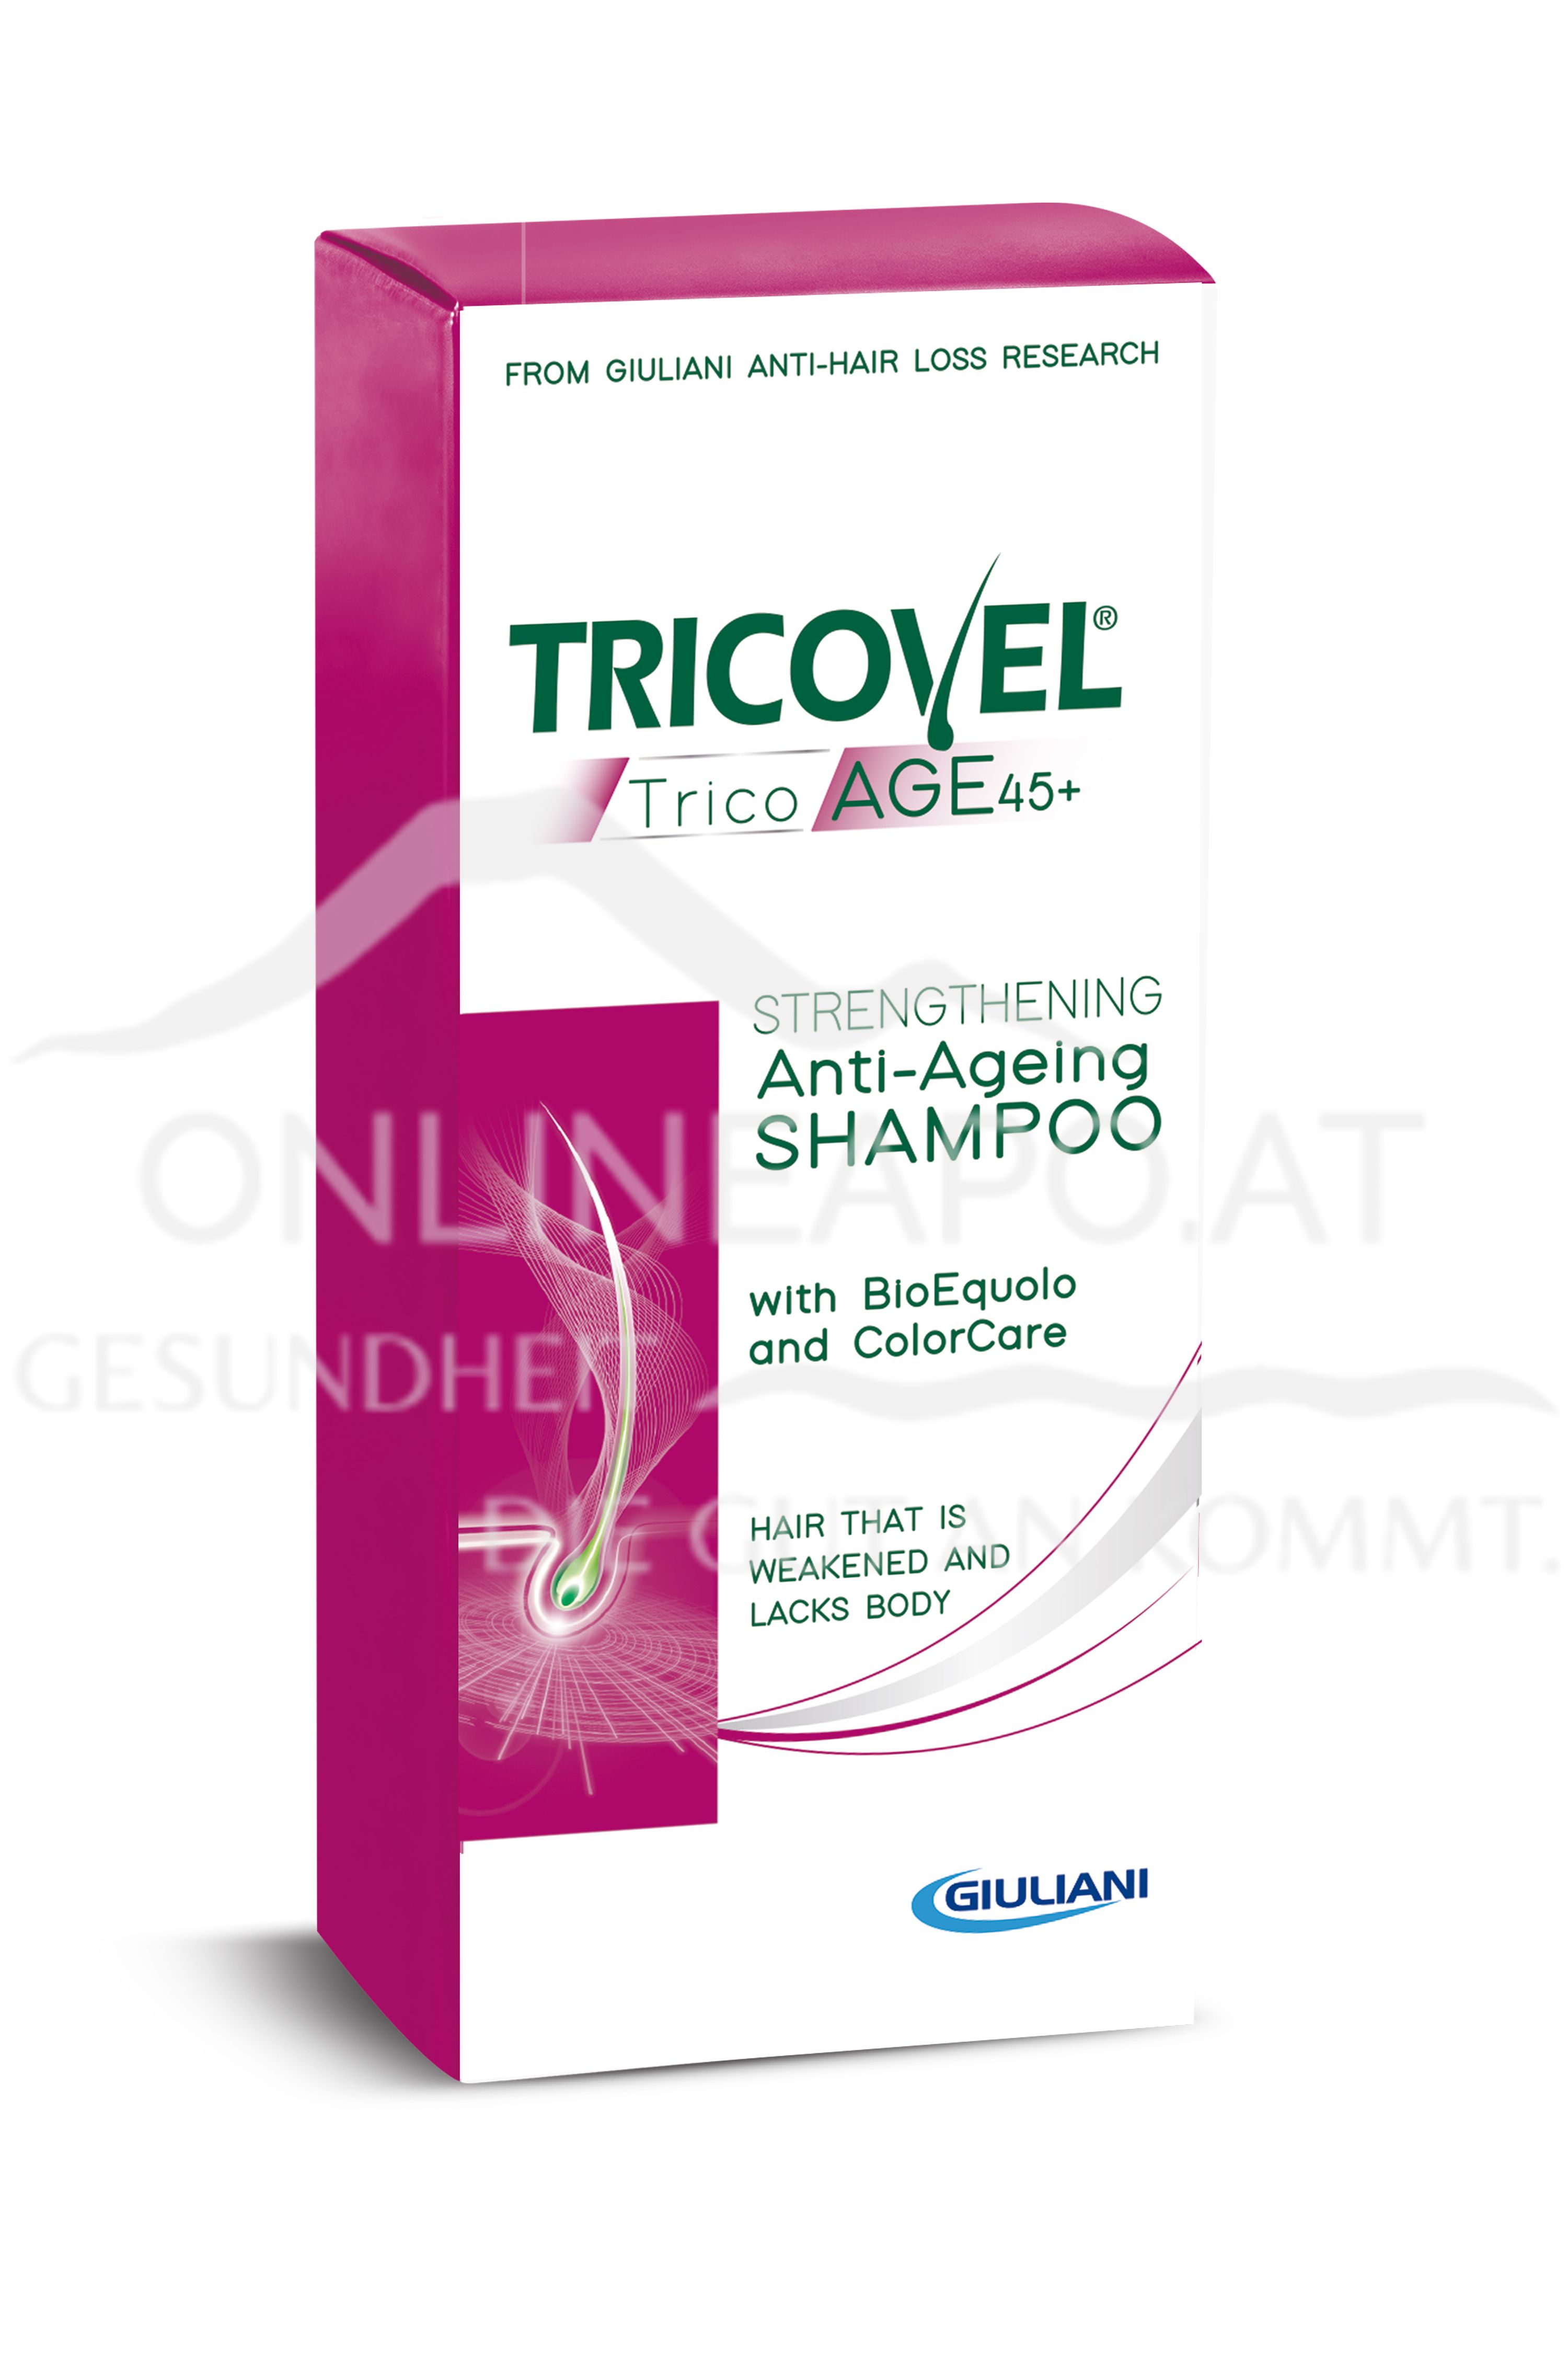 TRICOVEL TricoAGE45+ Shampoo